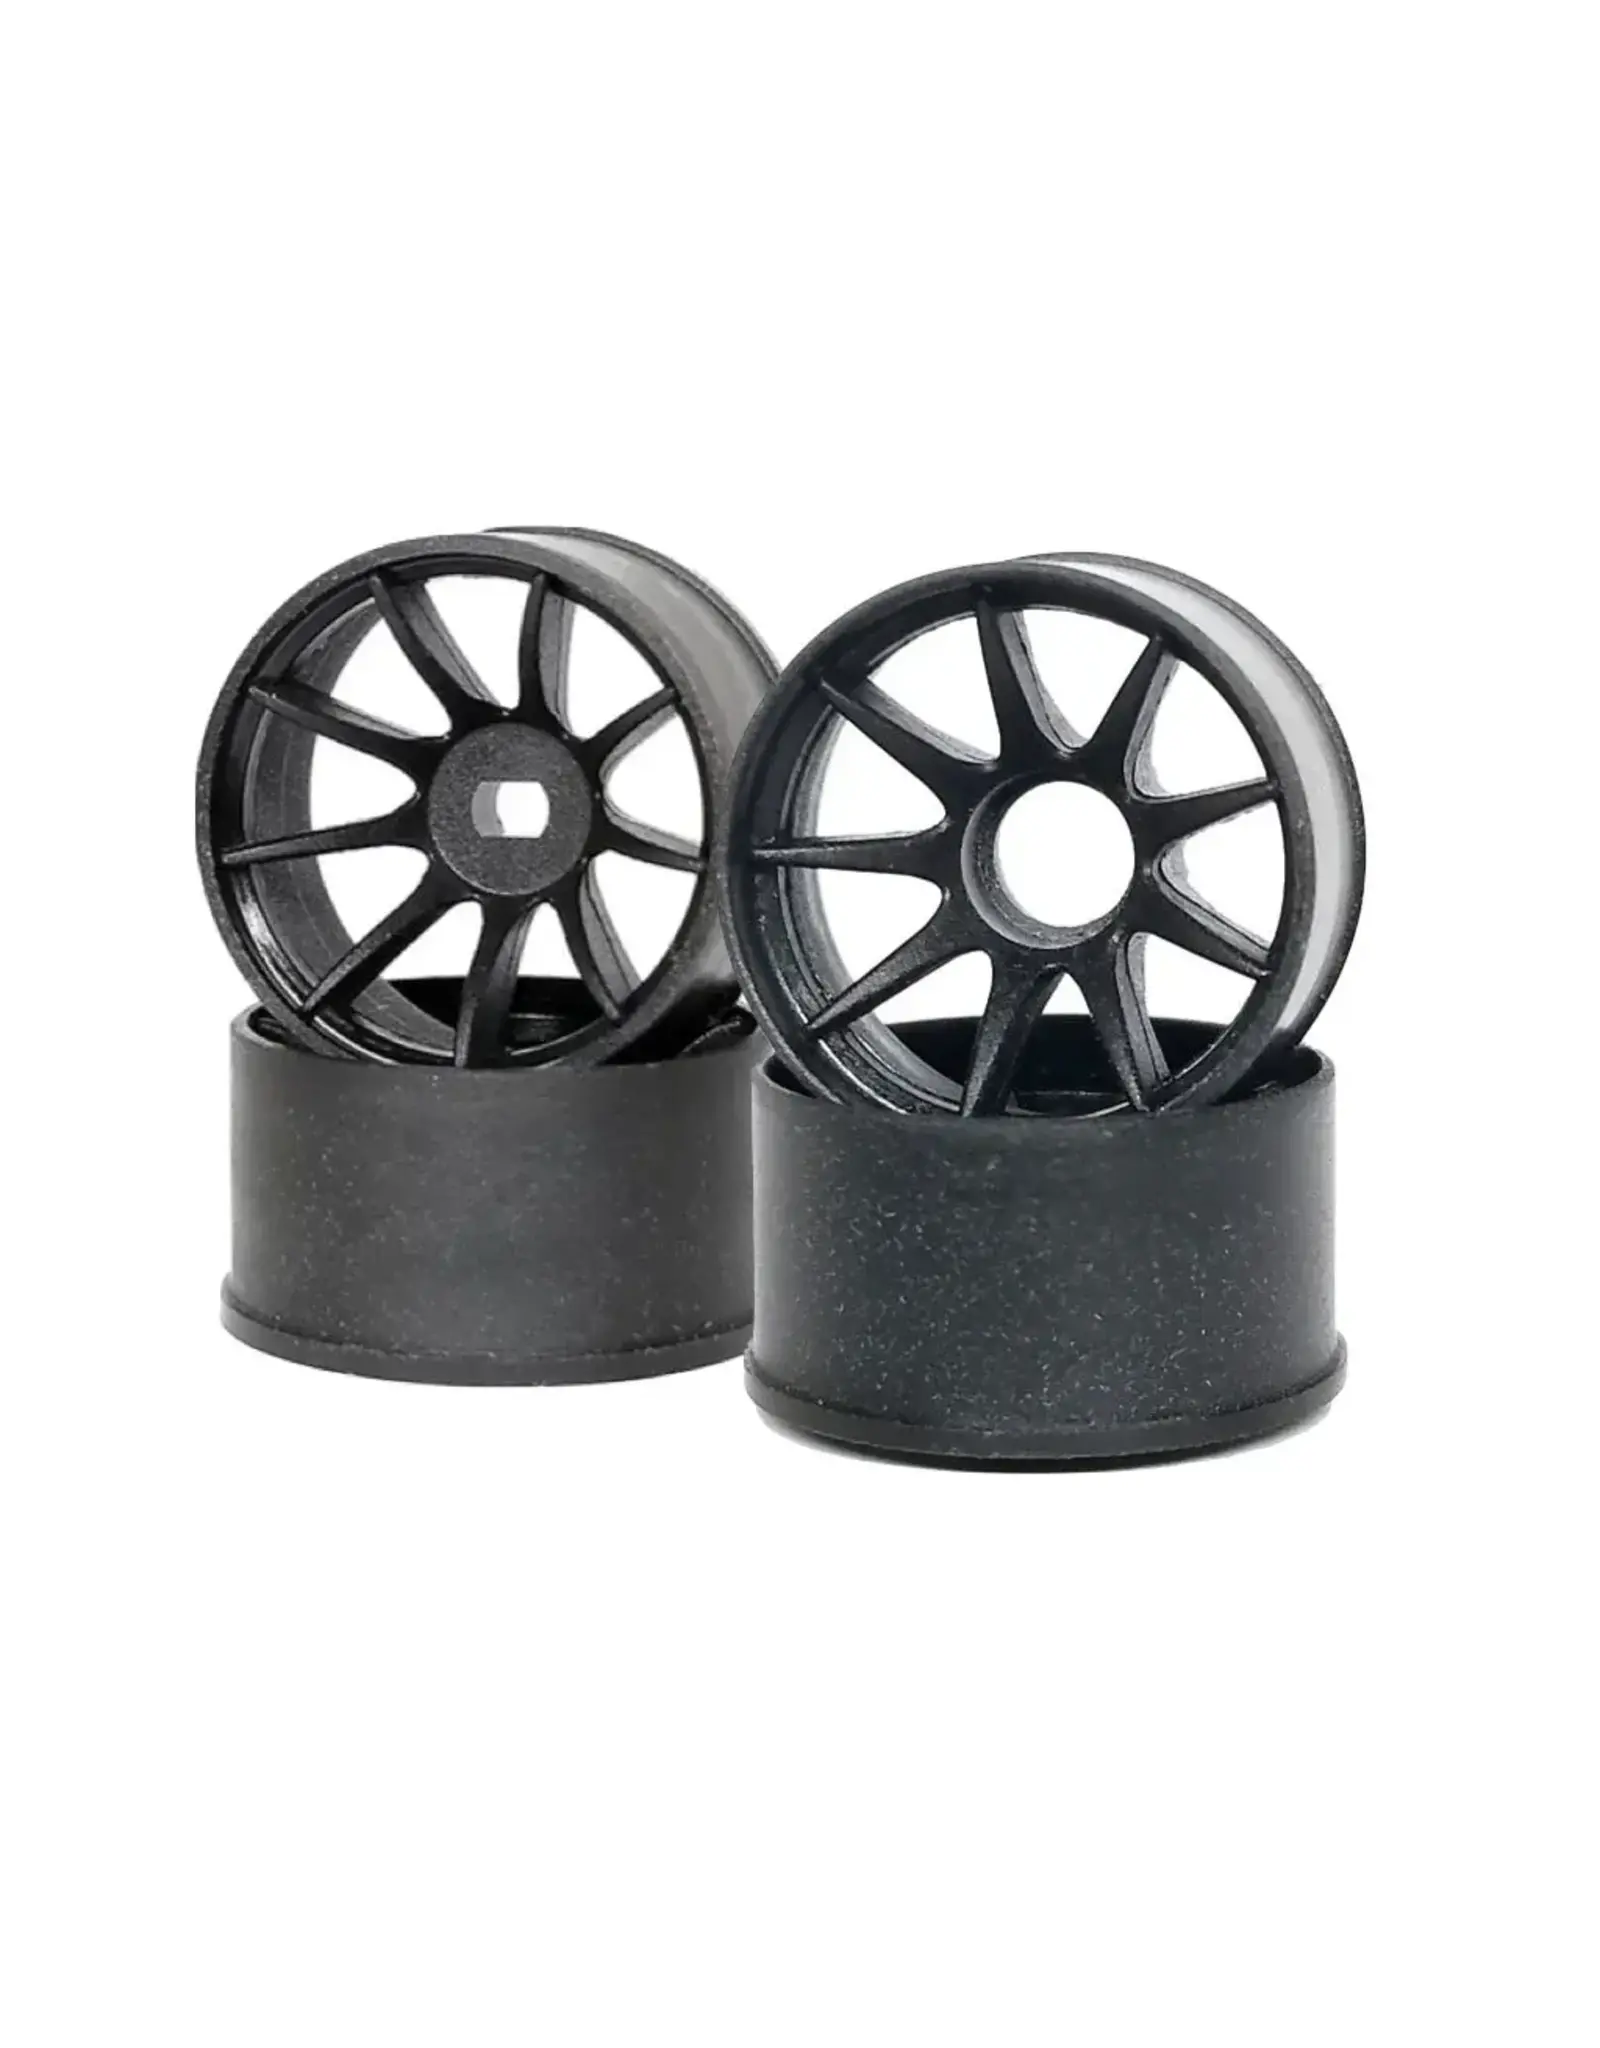 DXR DXR MP1 (W3) Machine-Cut Carbon Composite Wheels - Race Unlimited